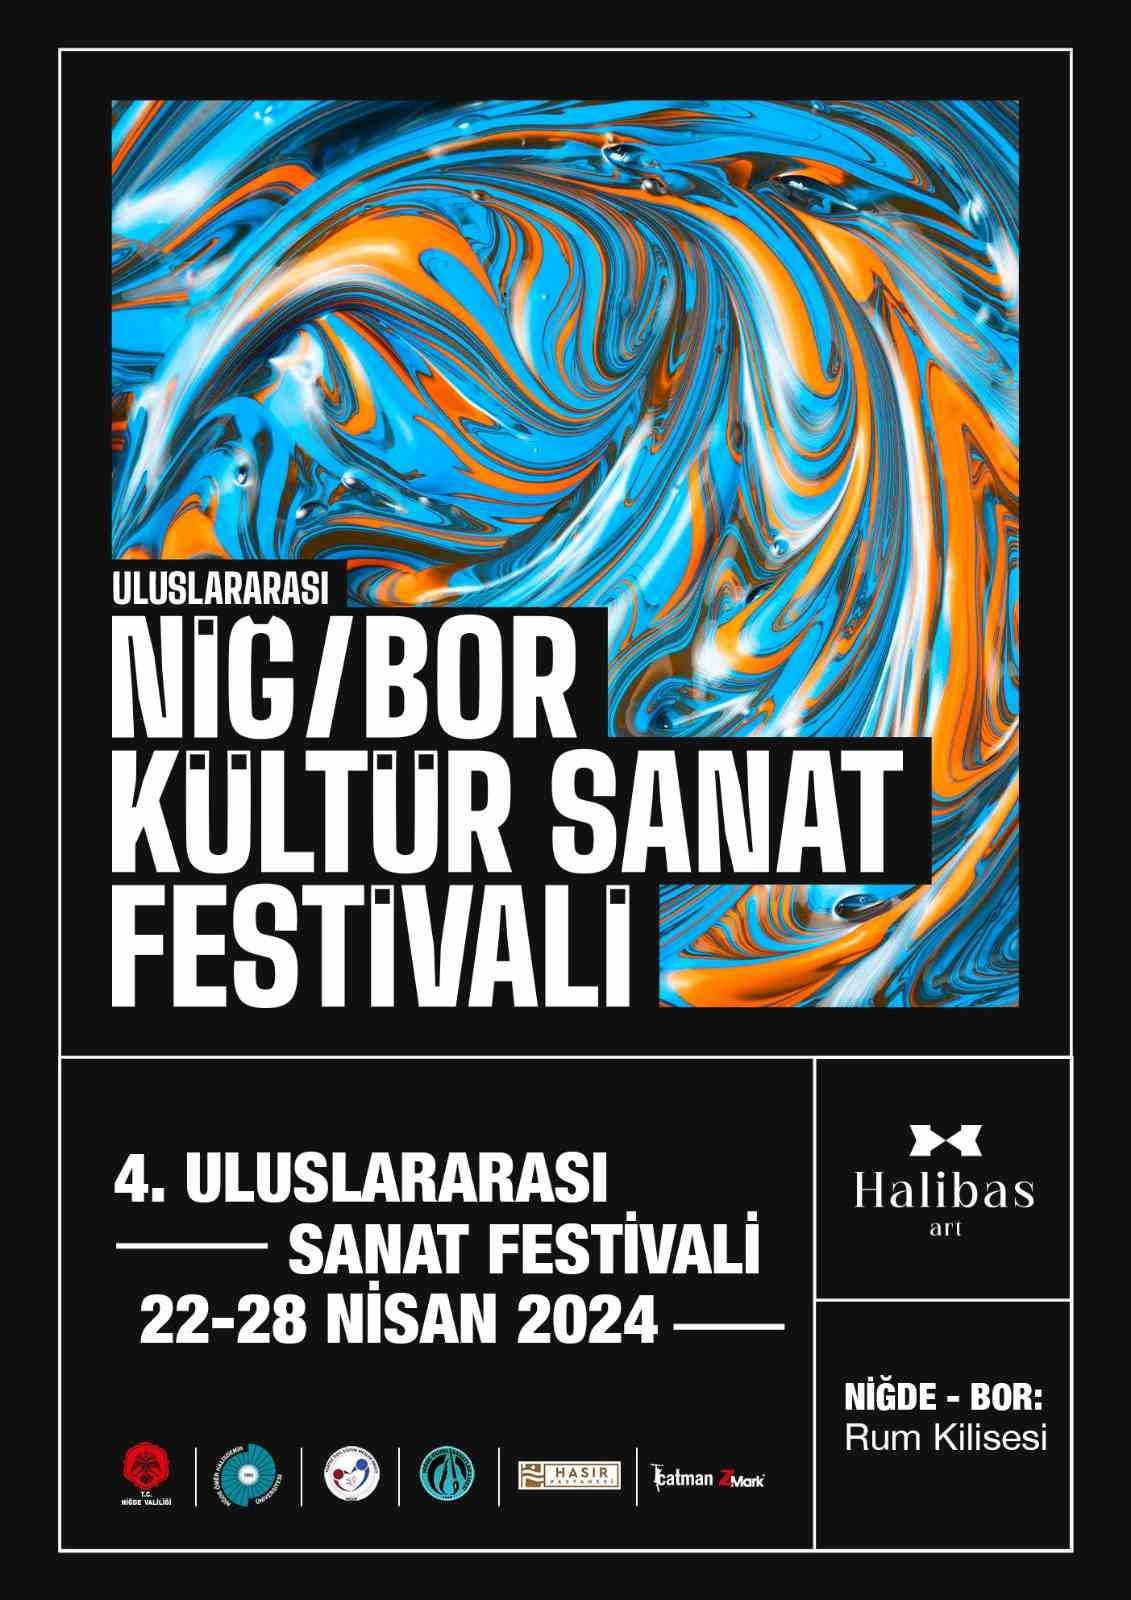 Niğ-Bor Kültür Sanat Festivali’nin 4’üncüsü düzenlenecek
